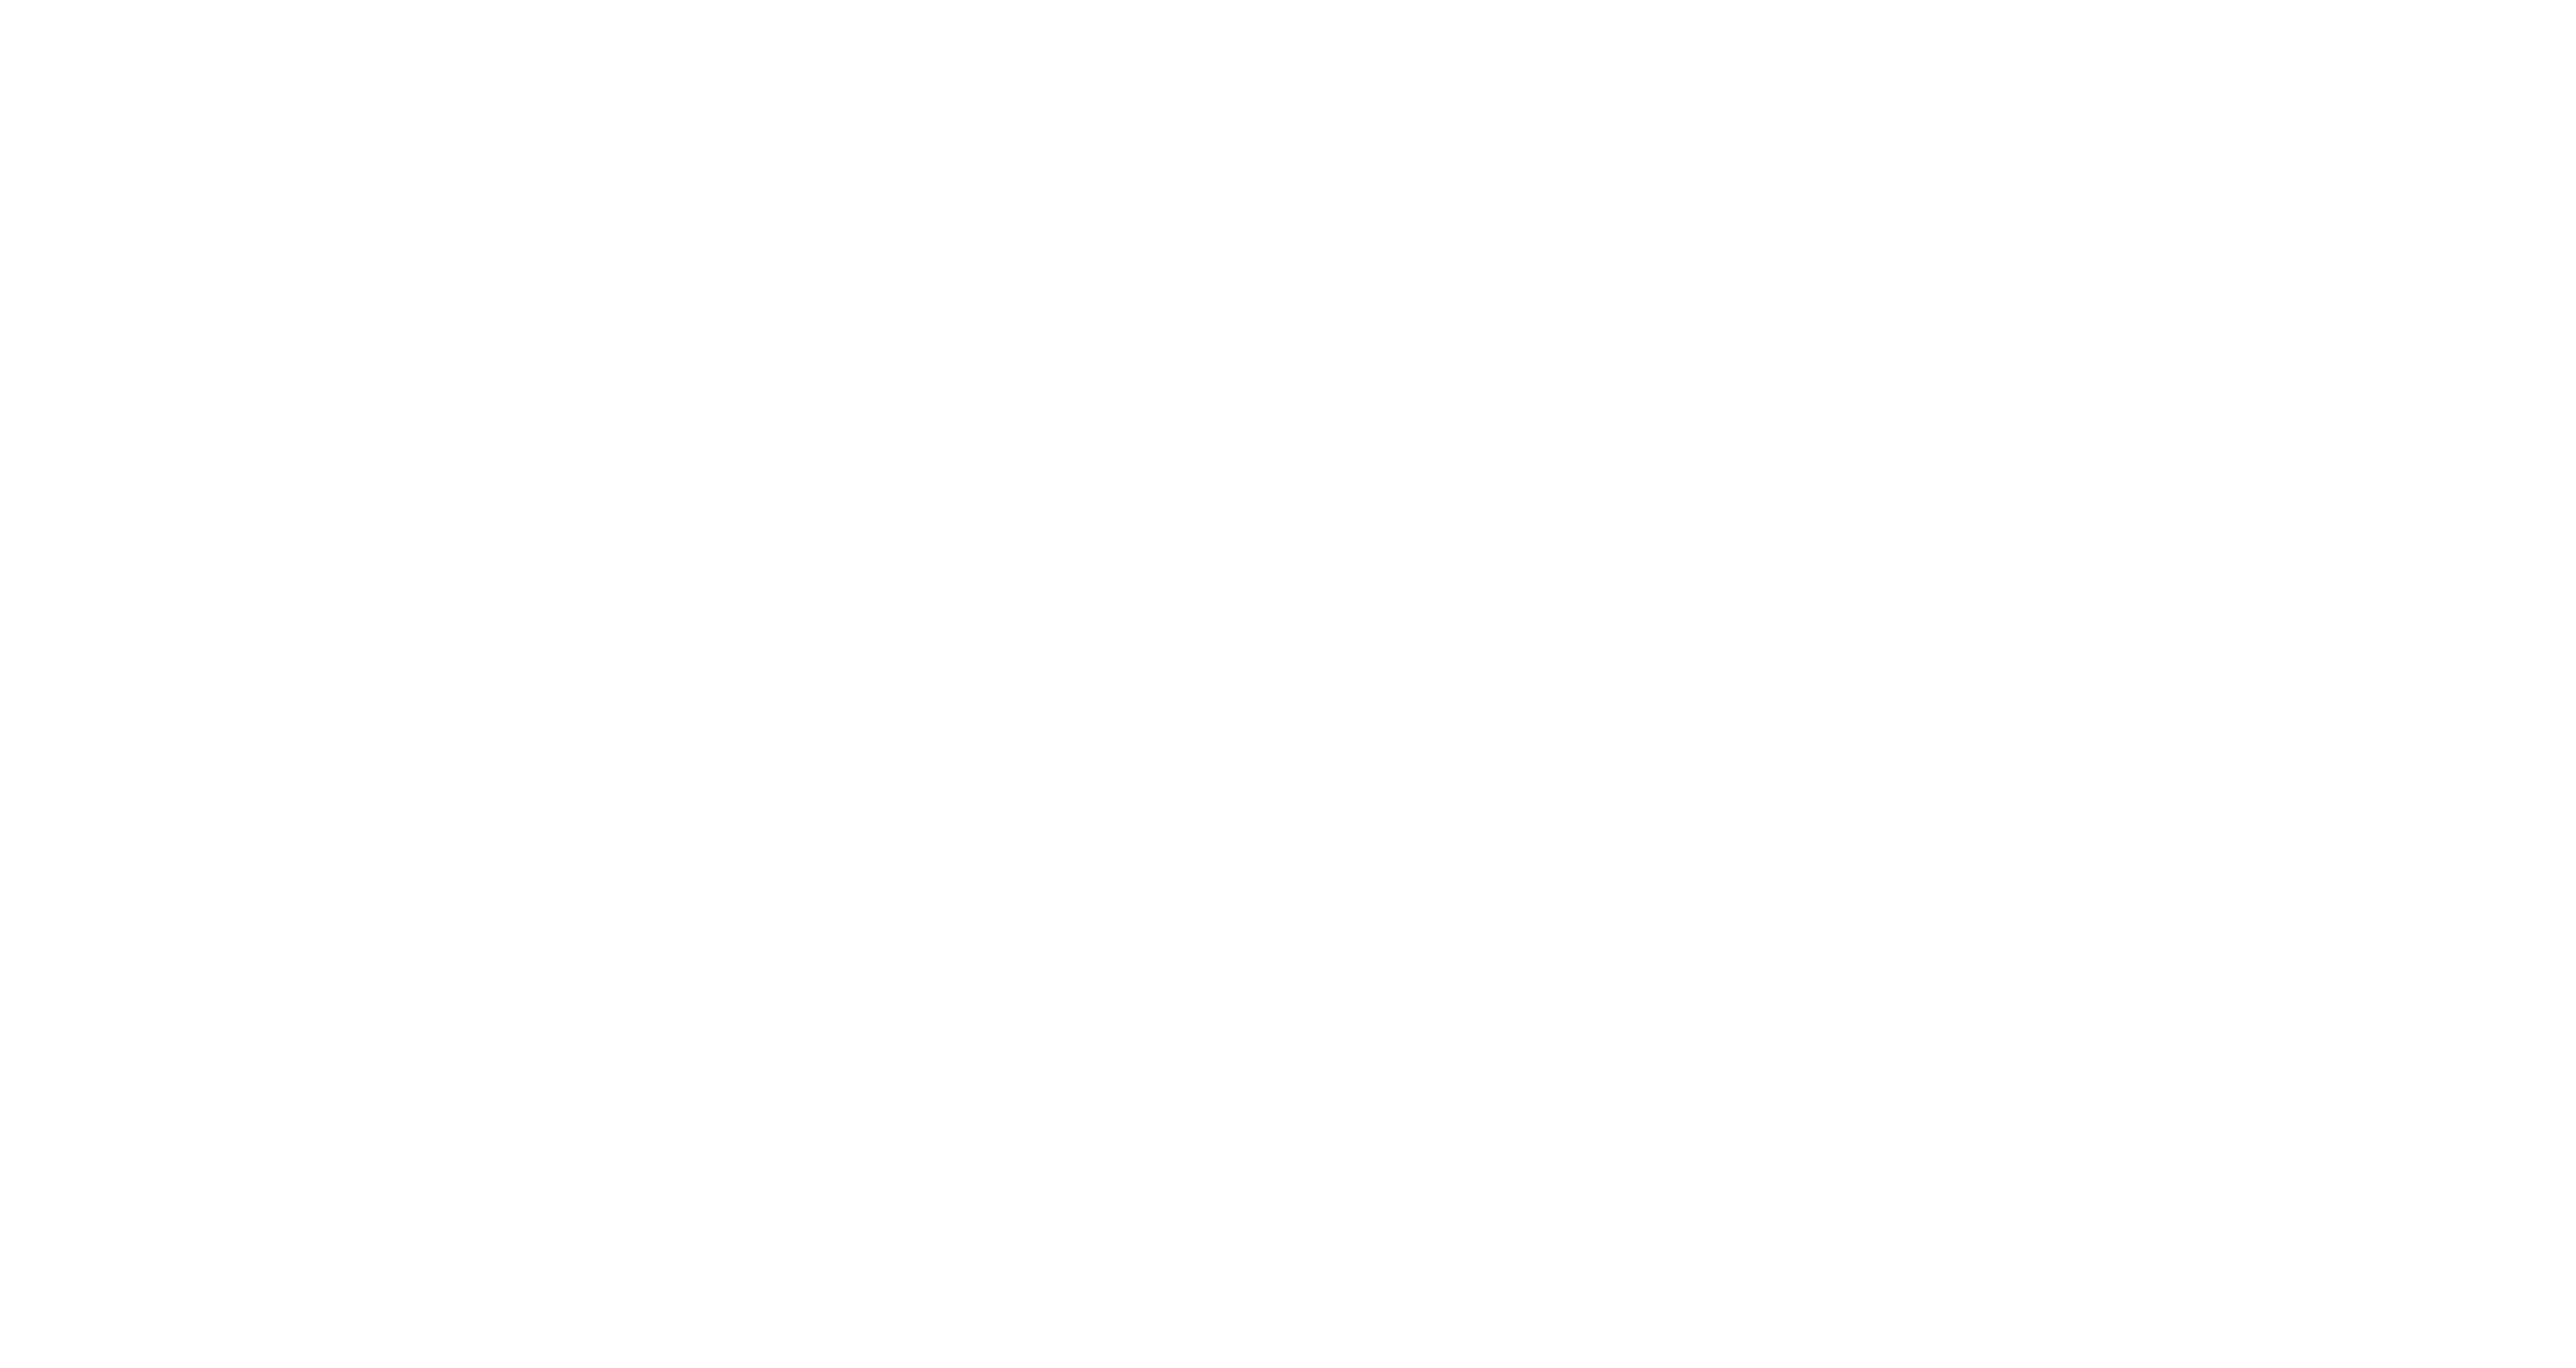 Enjoy Illinois